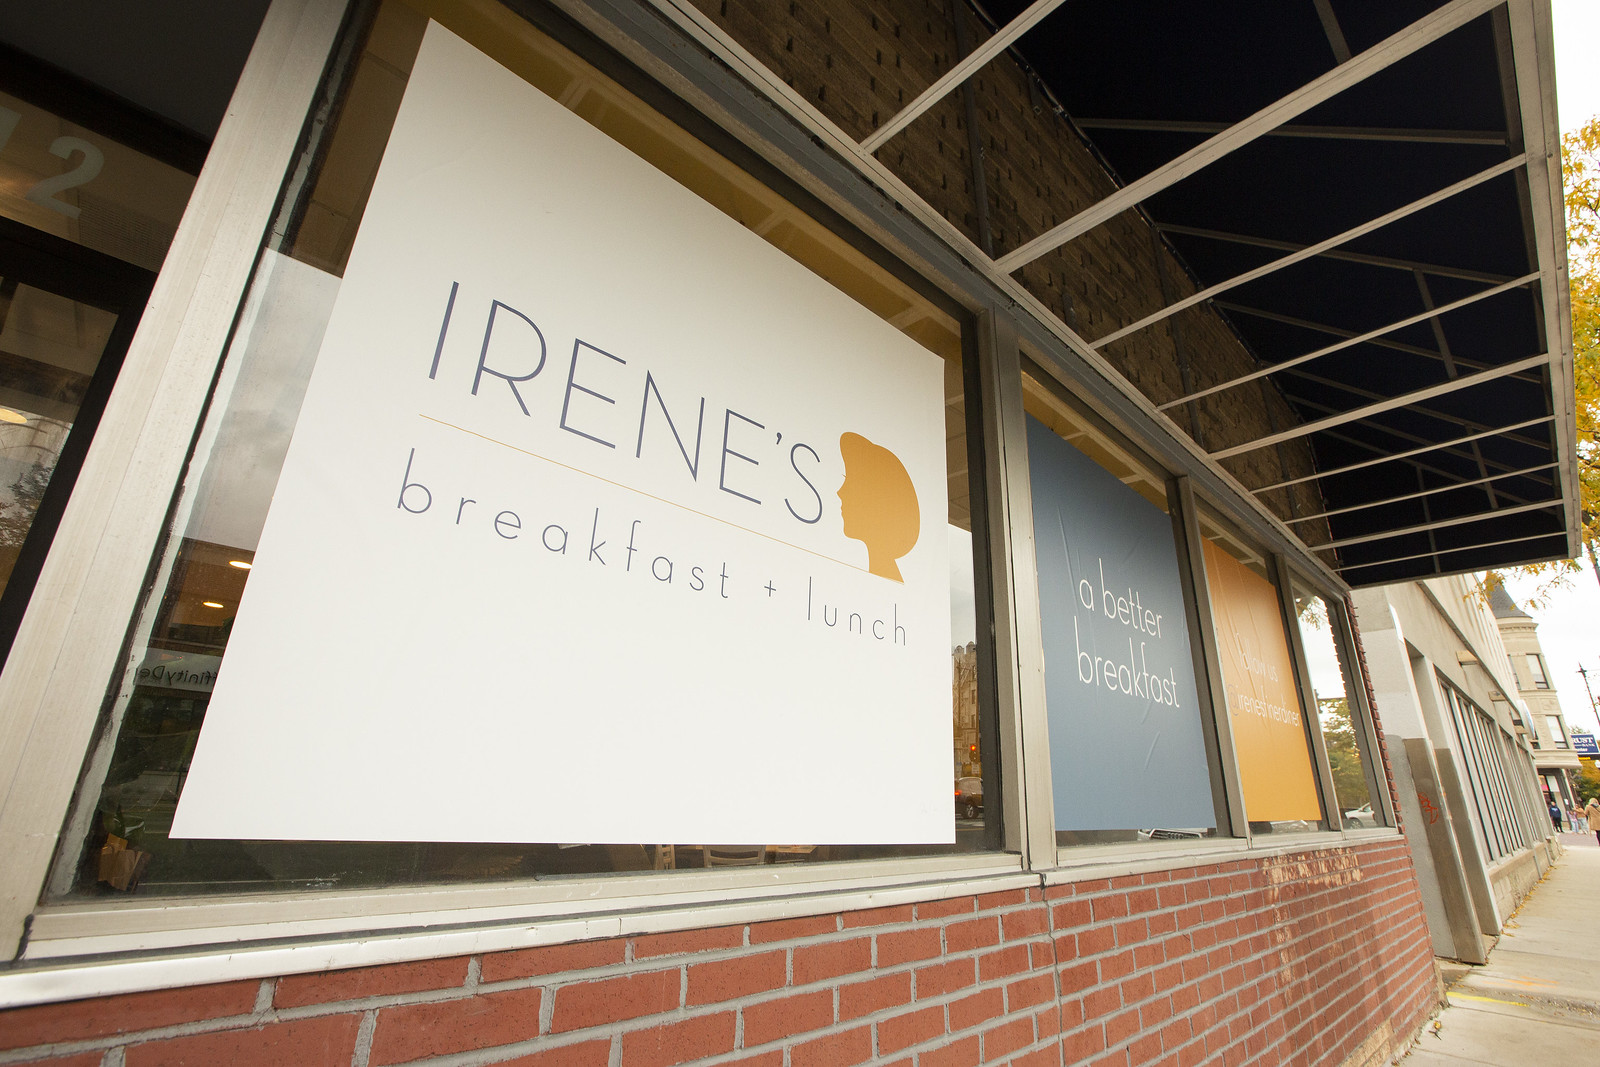 A sign on Irene’s window